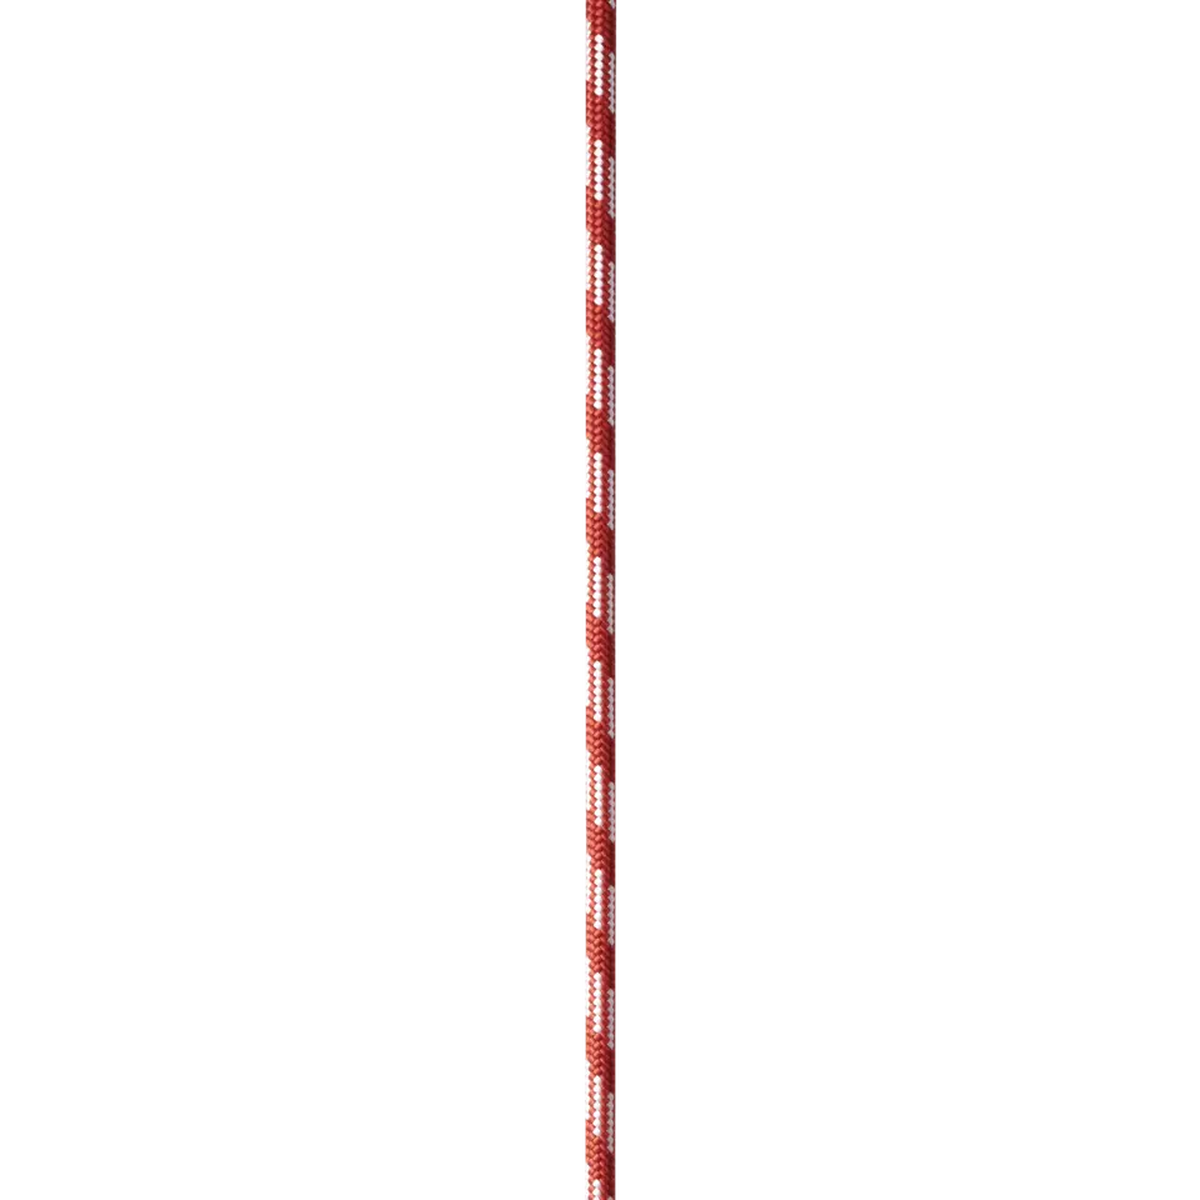 Edelrid Pes Cord 7MM - Red (Per Meter)